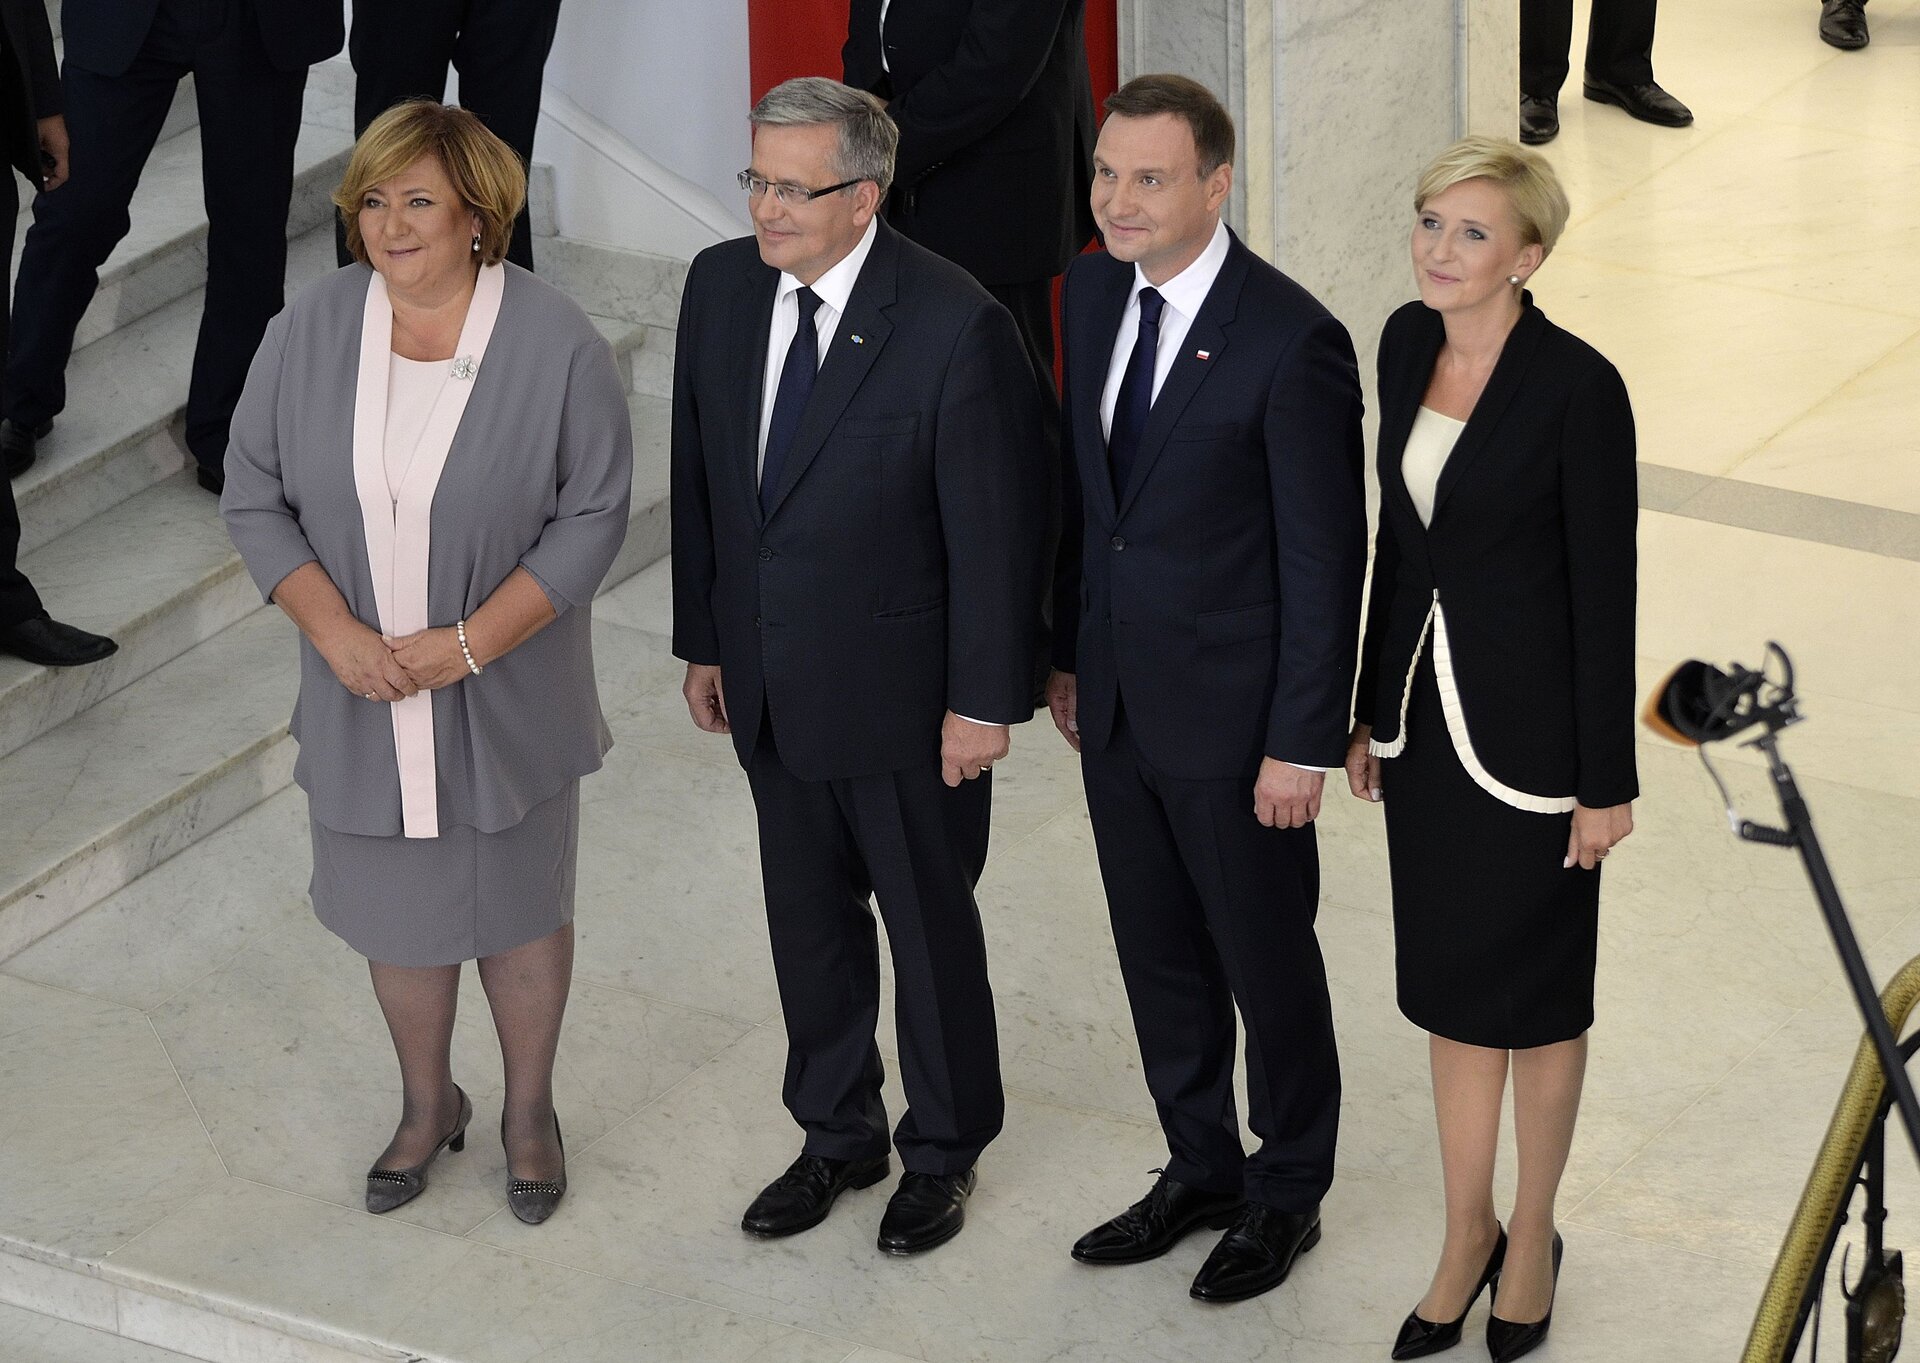 Zdjęcie przedstawia stojących obok siebie prezydentów: Bronisława Komorowskiego i Andrzeja Dudę. Obok nich stoją ich żony.